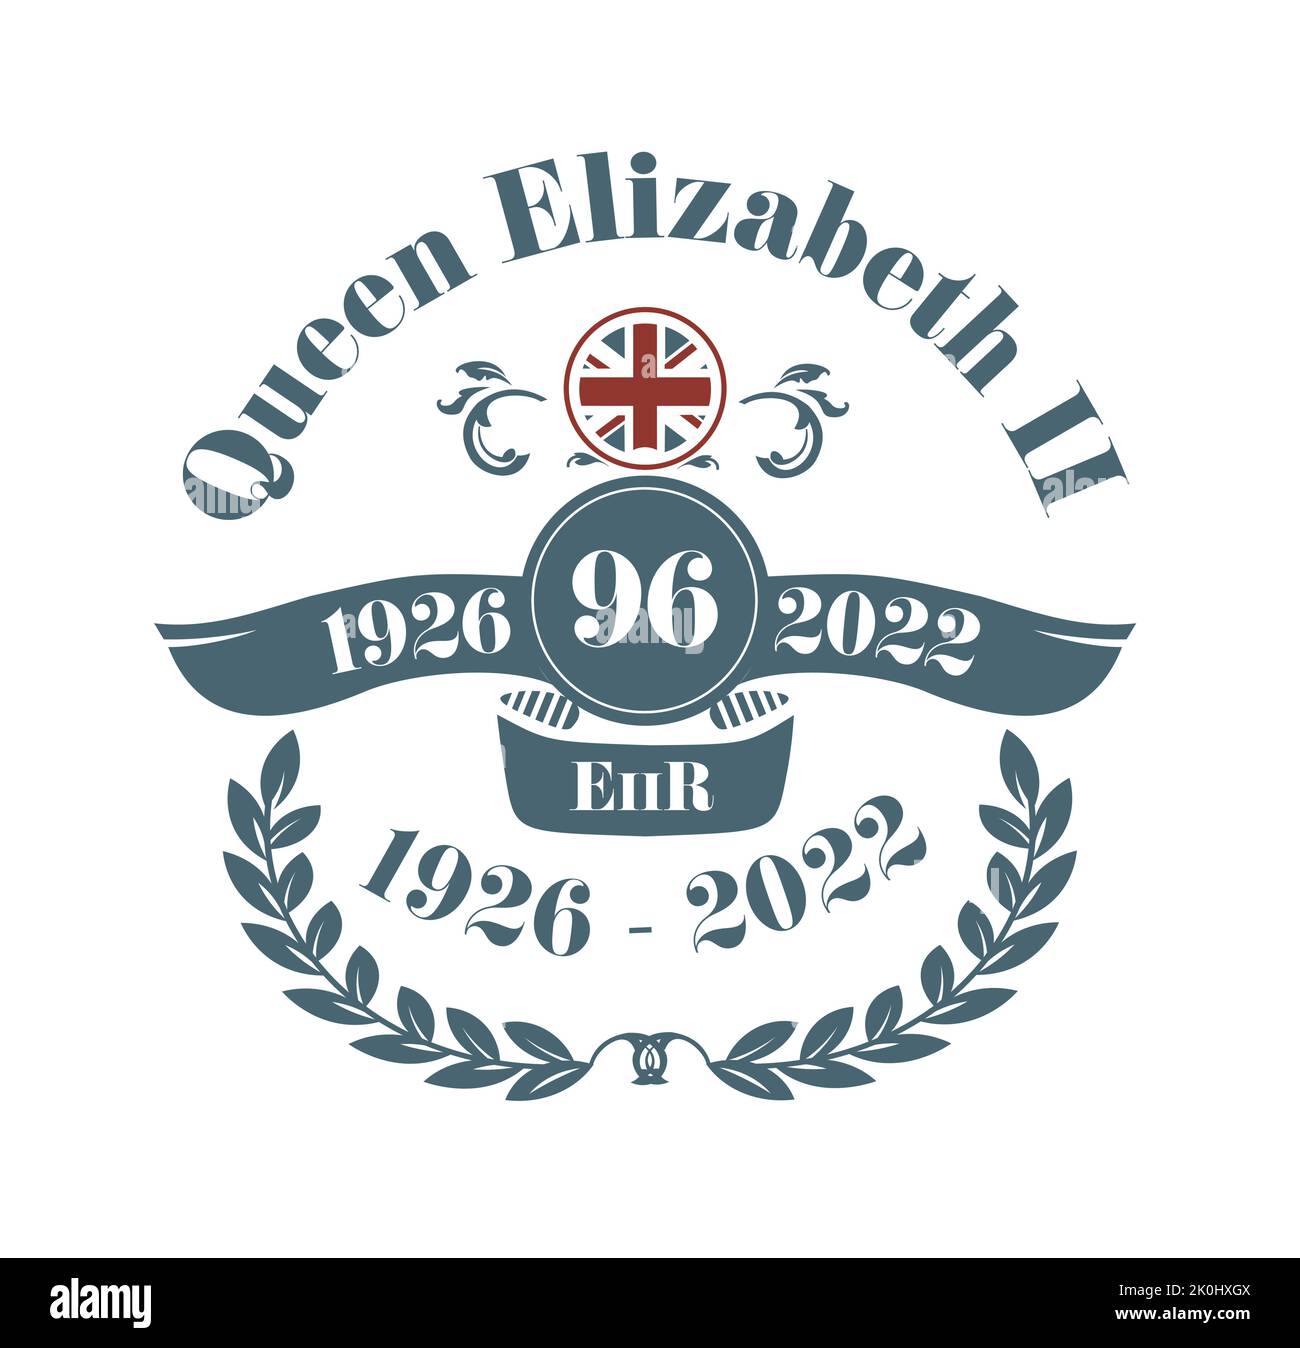 2022 Queen Elizabeth Dies - 1926 - 2022 Rest in Peace vector illustration. Stock Vector